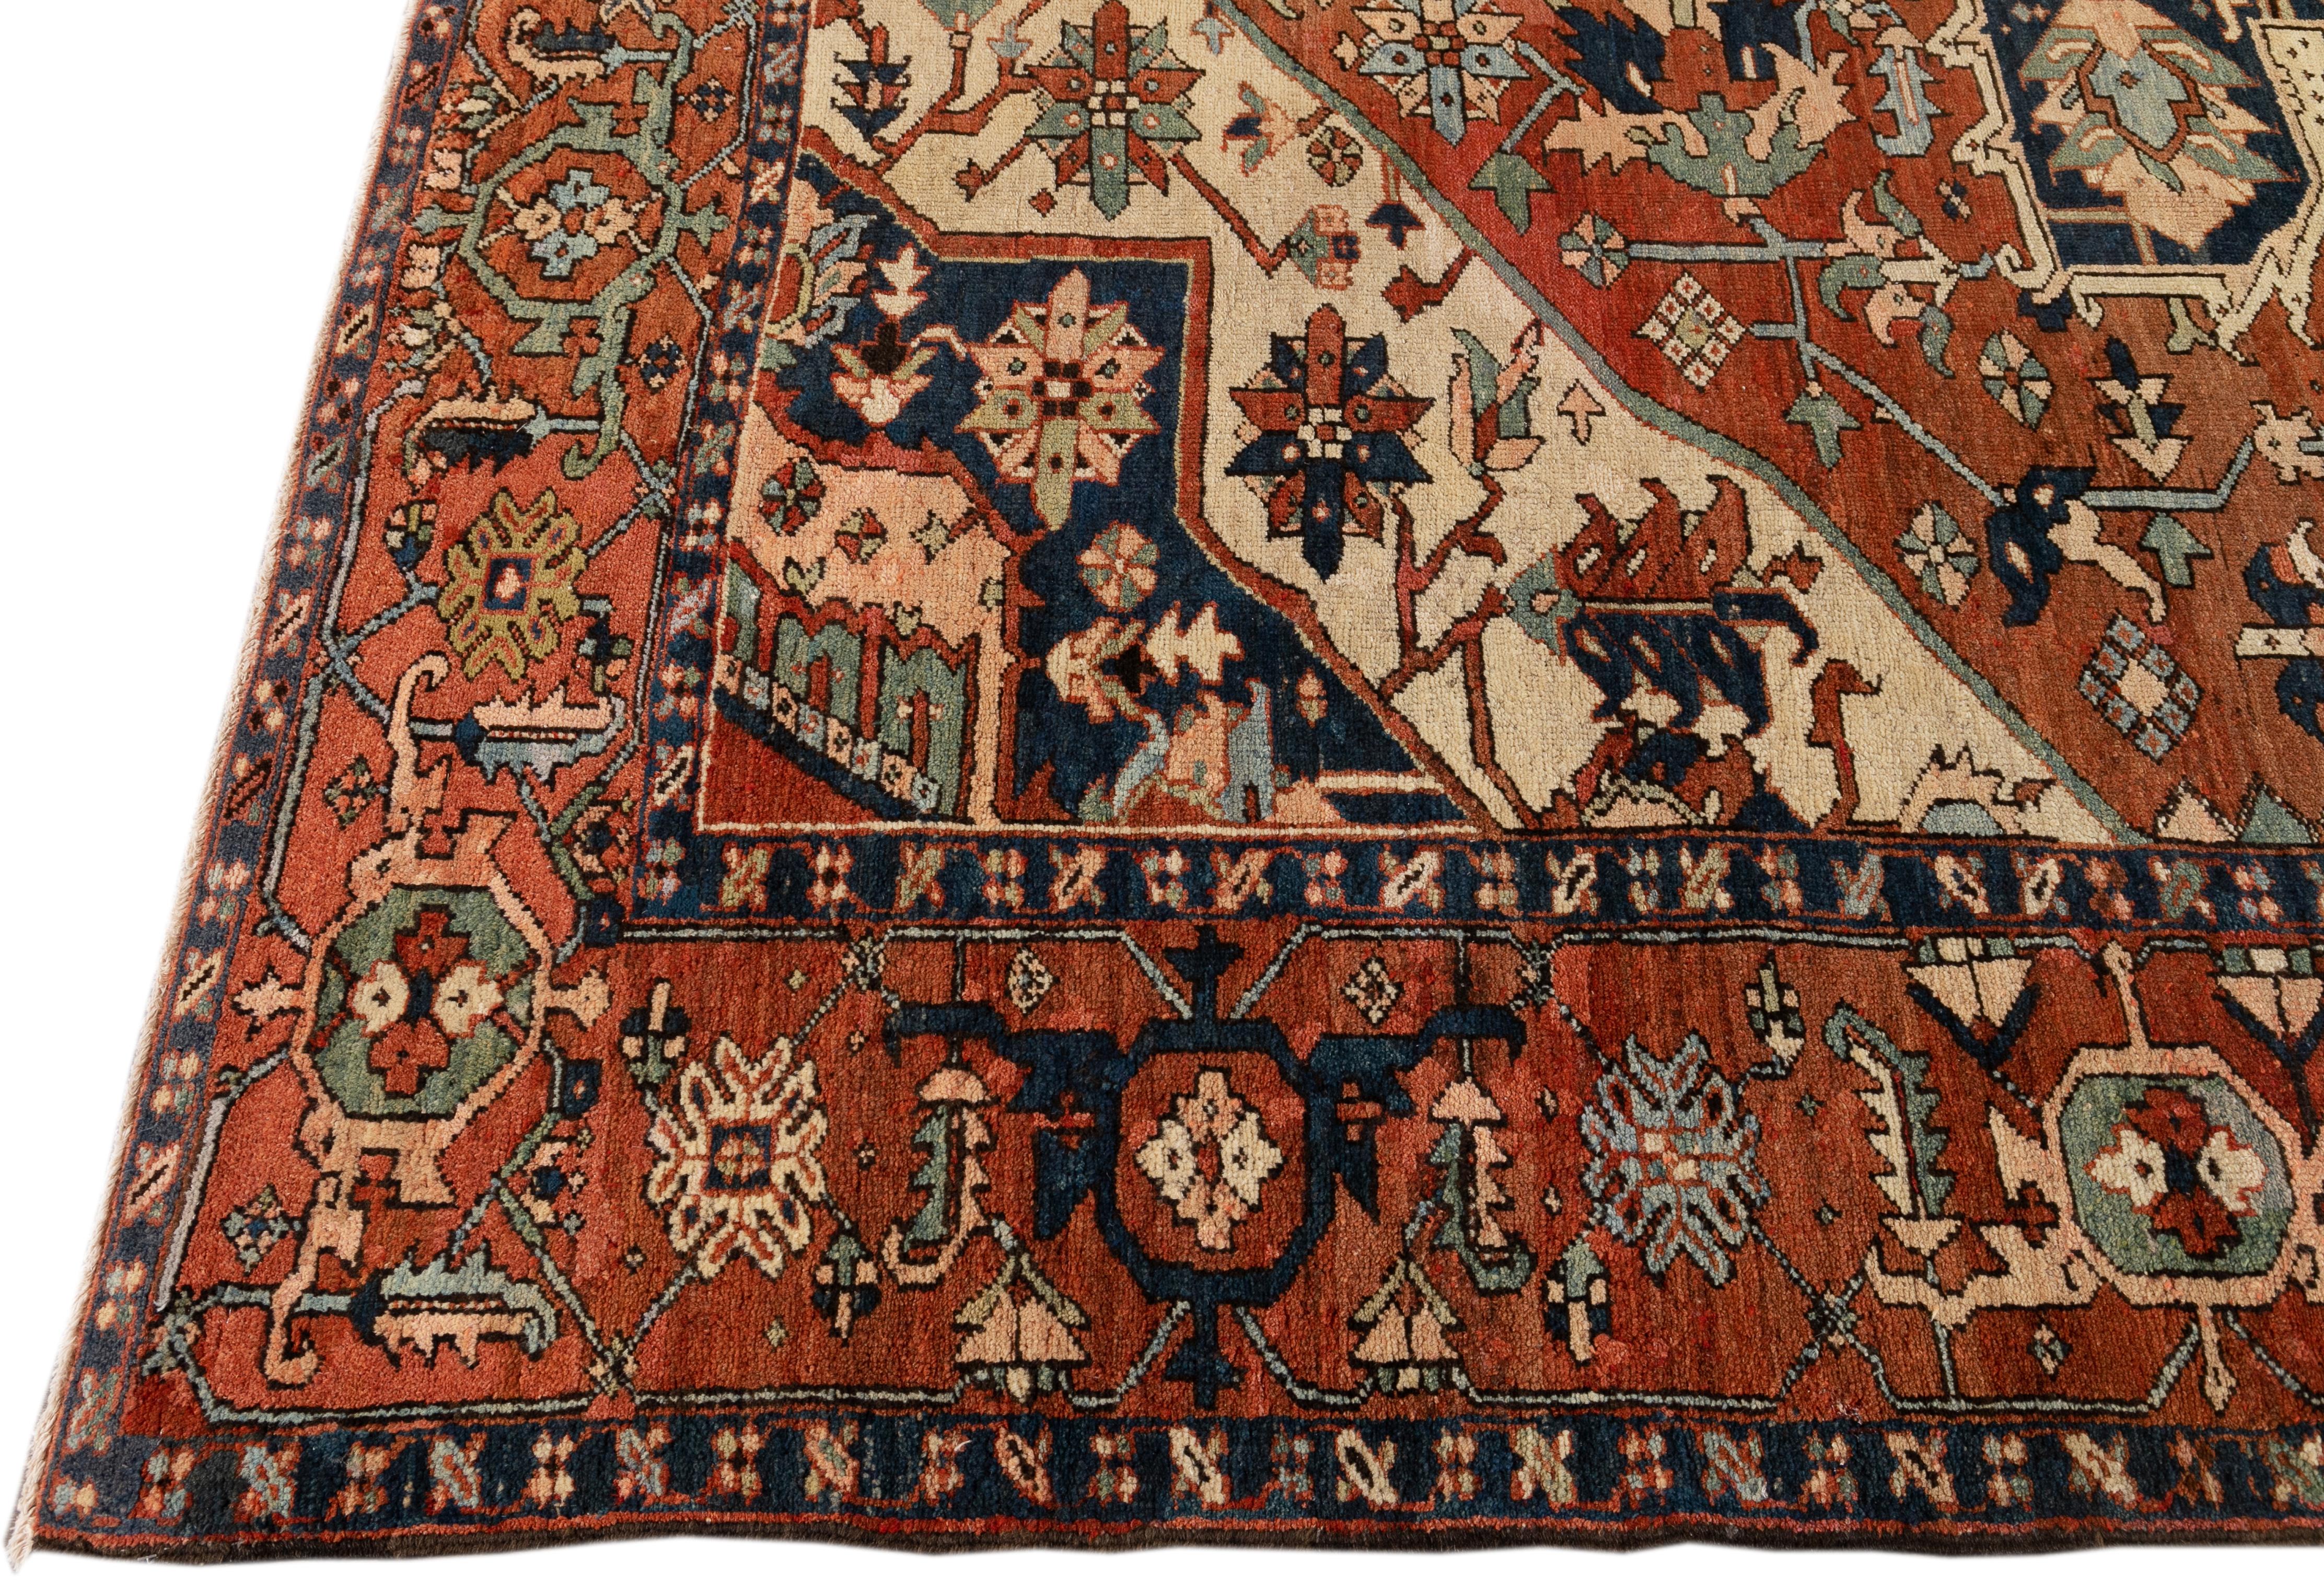 Schöner antiker Heriz-Teppich aus handgeknüpfter Wolle mit einem orange-rostfarbenen Feld. Dieser Perserteppich hat dunkelblaue und pfirsichfarbene Akzente in einem prächtigen floralen Medaillon in der Mitte.

Dieser Teppich misst: 10'1